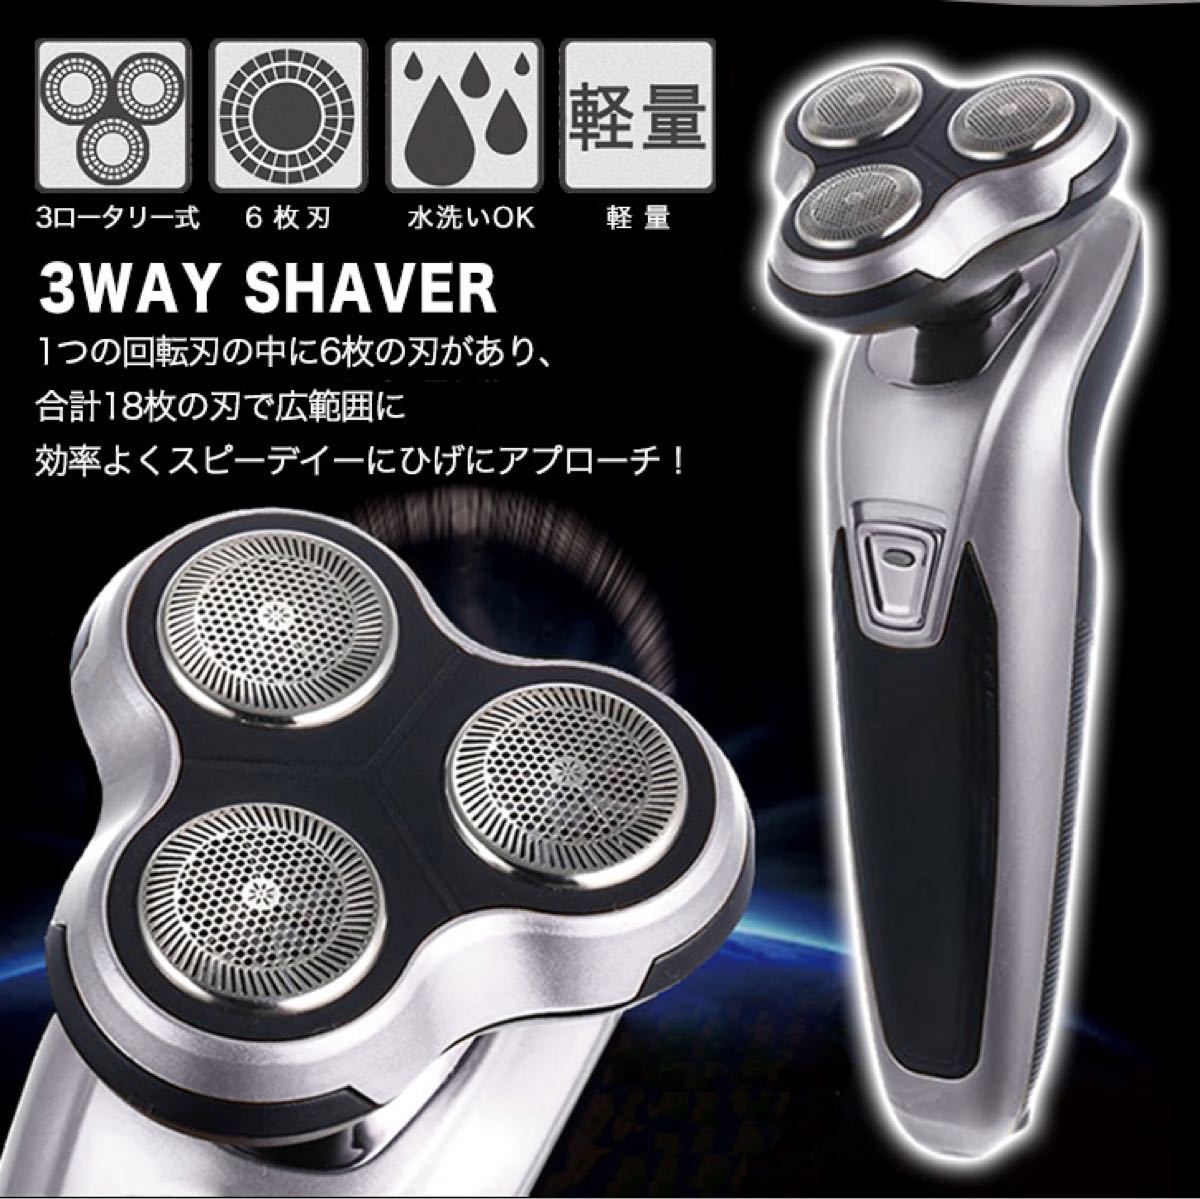 シェーバー 電動シェーバー 髭剃り 3wayシェーバー 3ロータリー式 6枚刃 水洗い可能 軽量 効率的